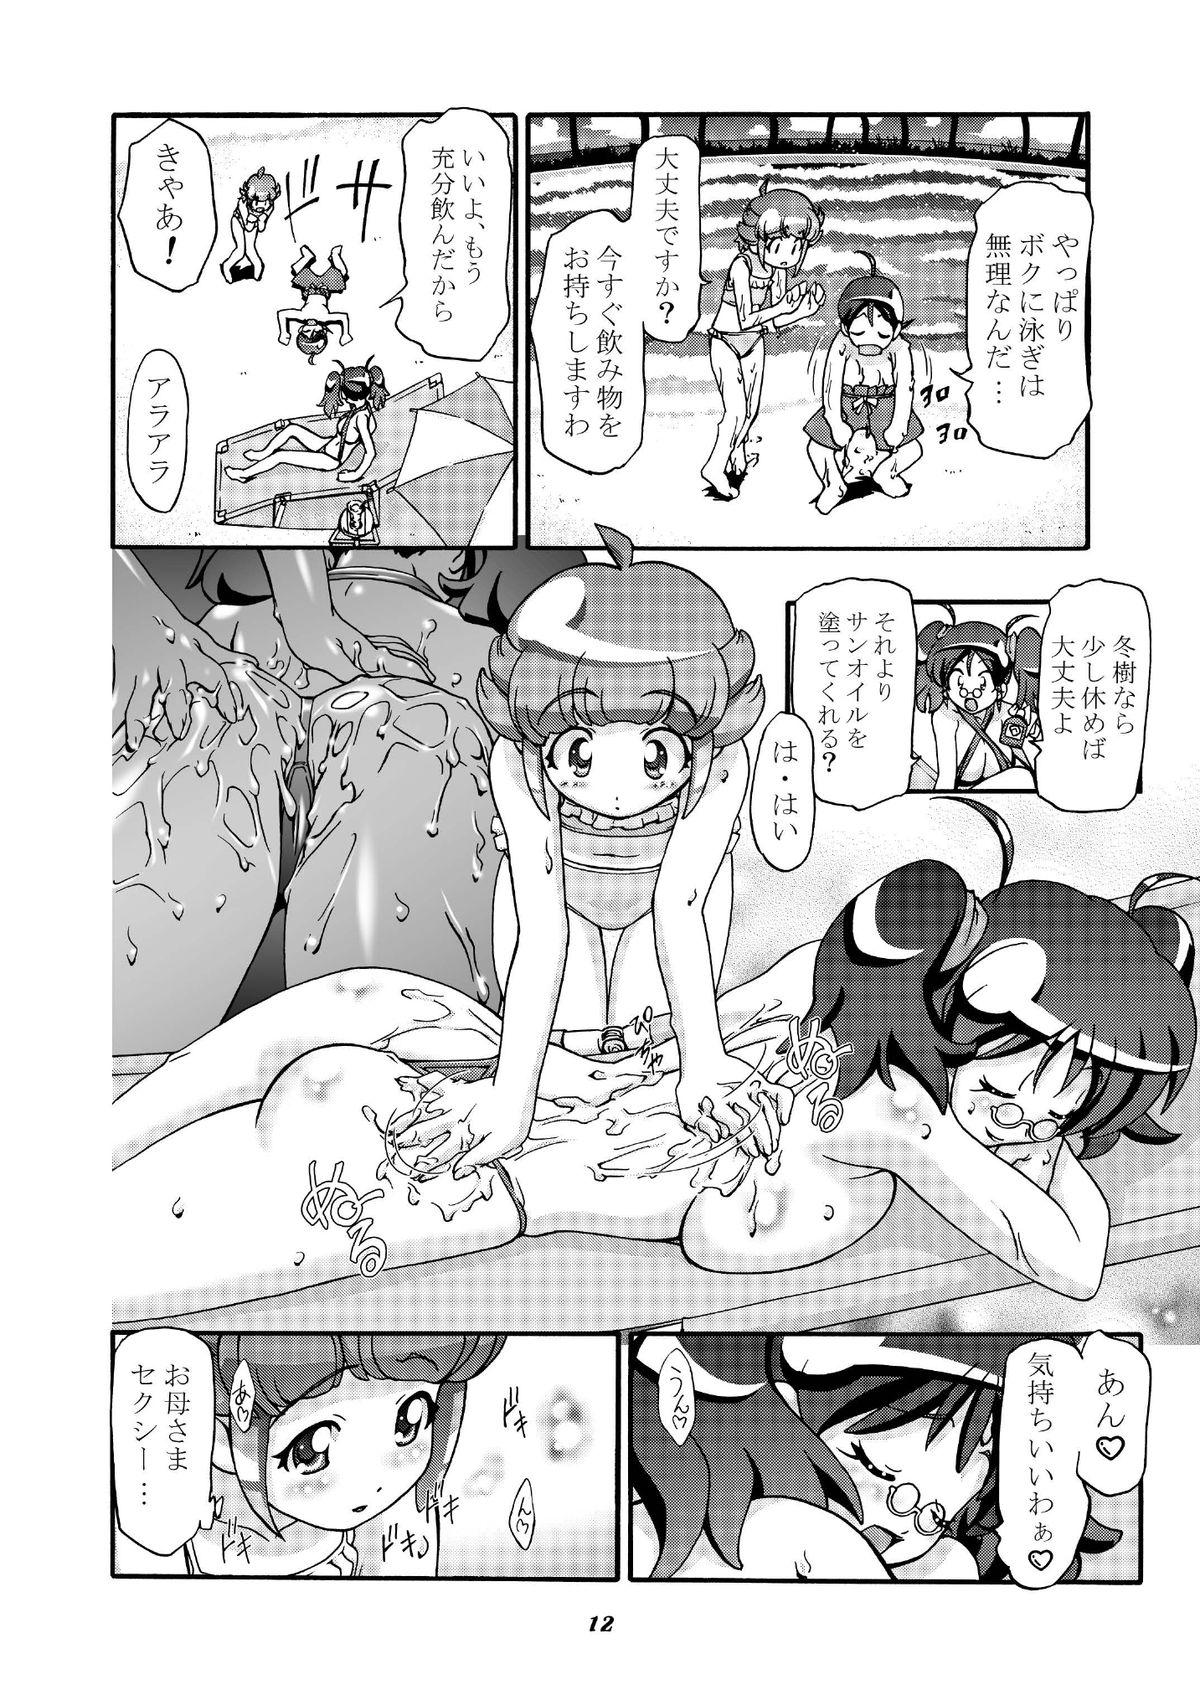 Foursome Aki Momo - Autumn Peach - Keroro gunsou Nipple - Page 11